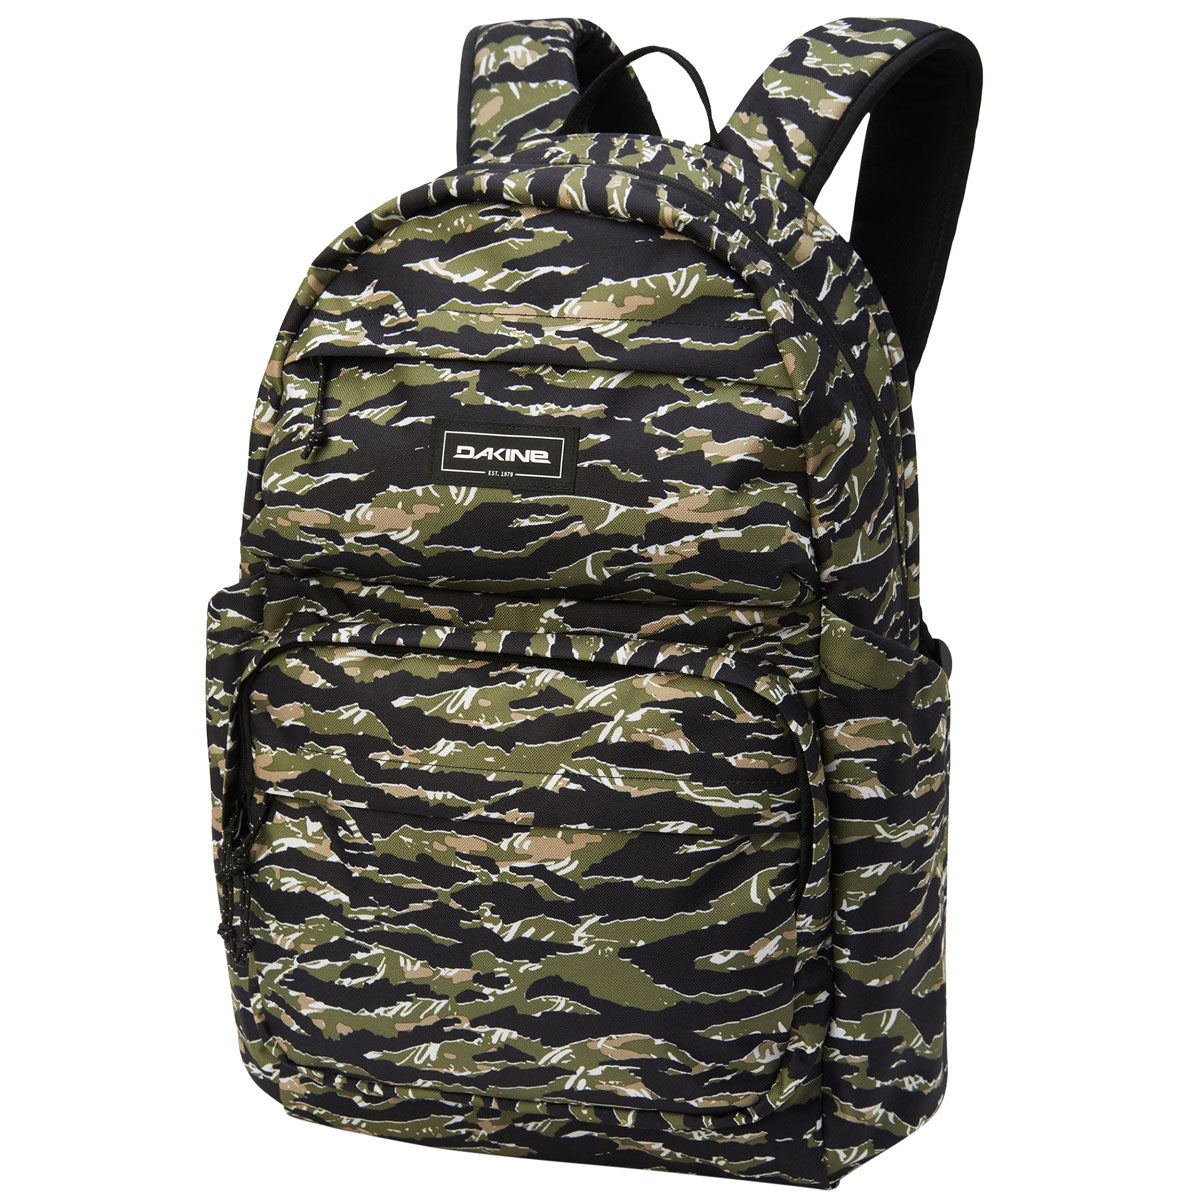 Dakine Method 32L Backpack - Tiger Camo image 1